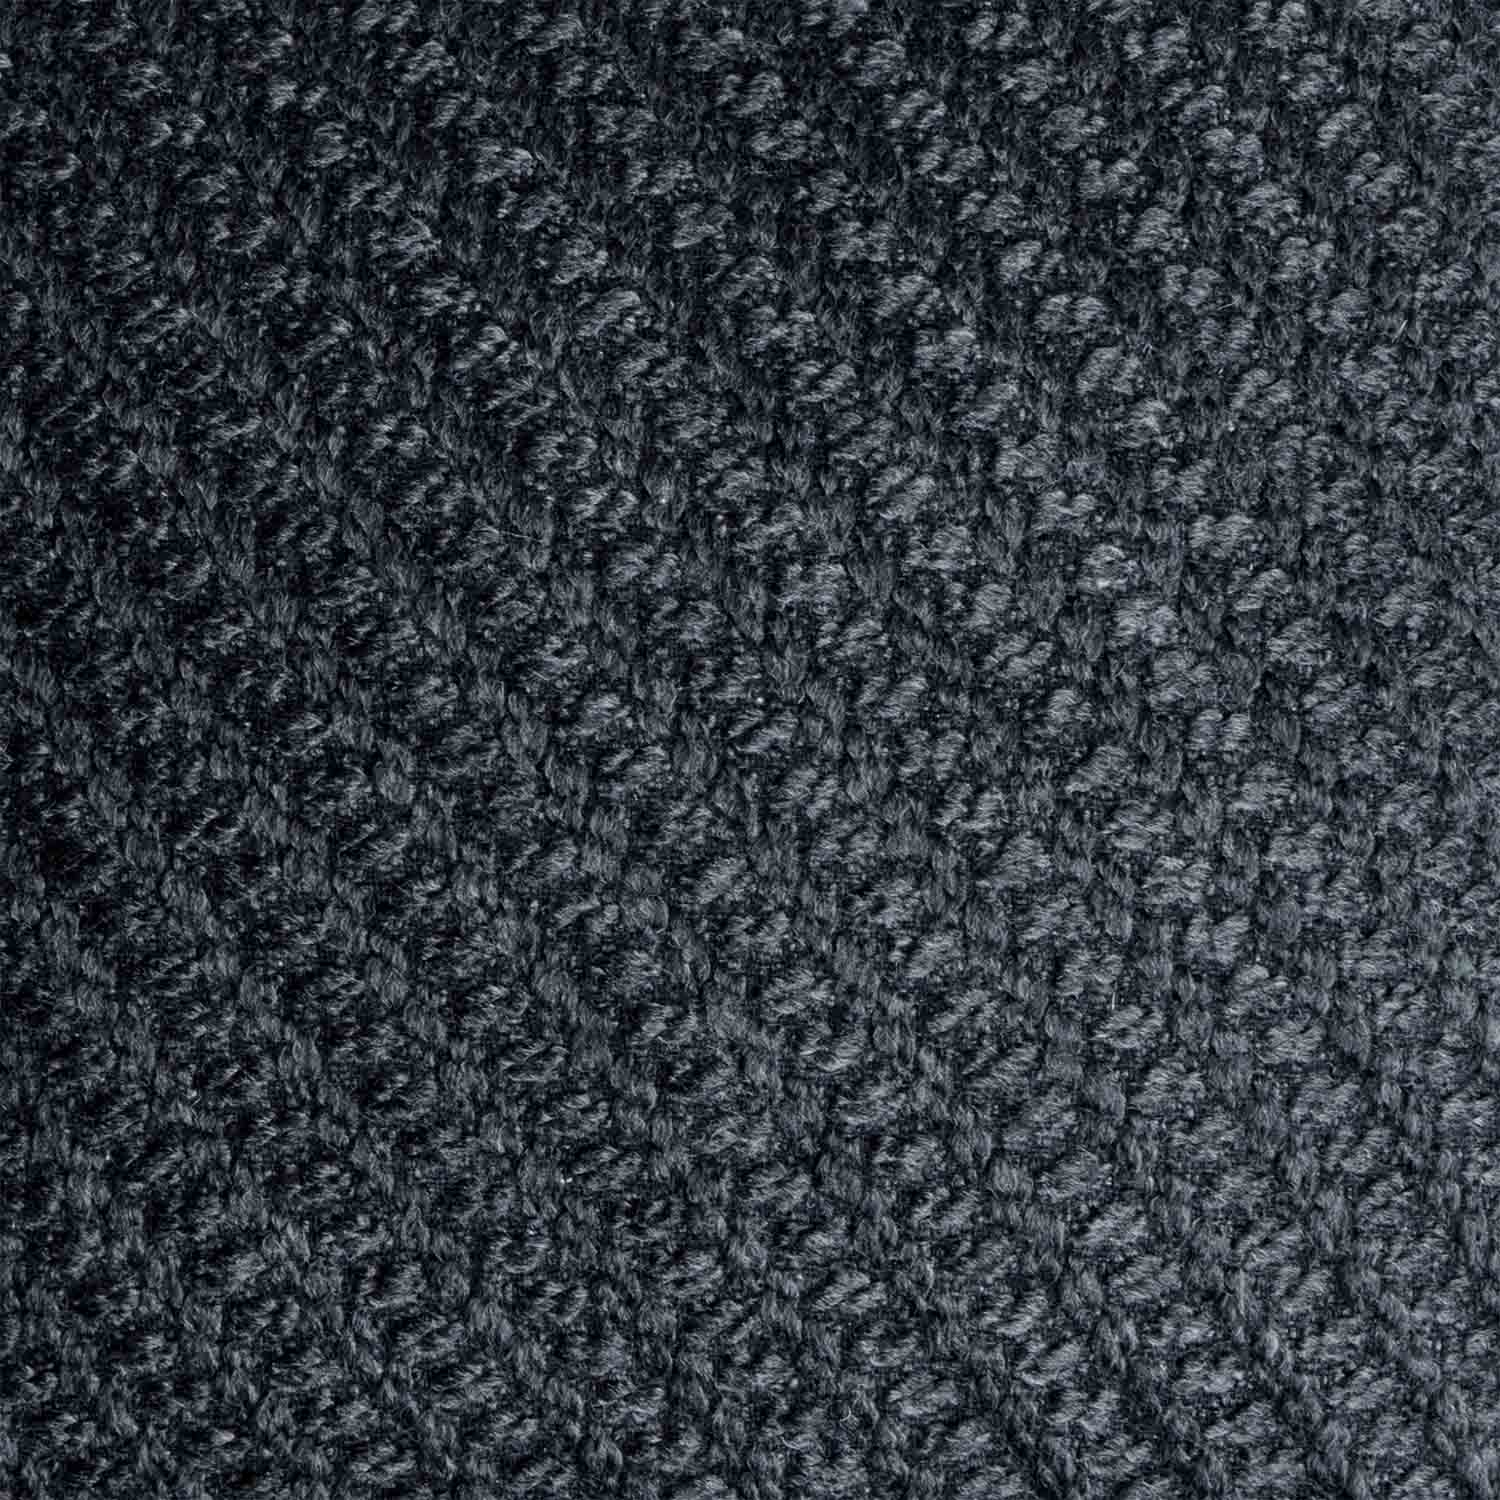 Tejido con Nudos Rico en Textura 30x45 cm. Black Velvet Studio Funda cojín Knot 80% Lana y 20% poliéster Color Gris Oscuro